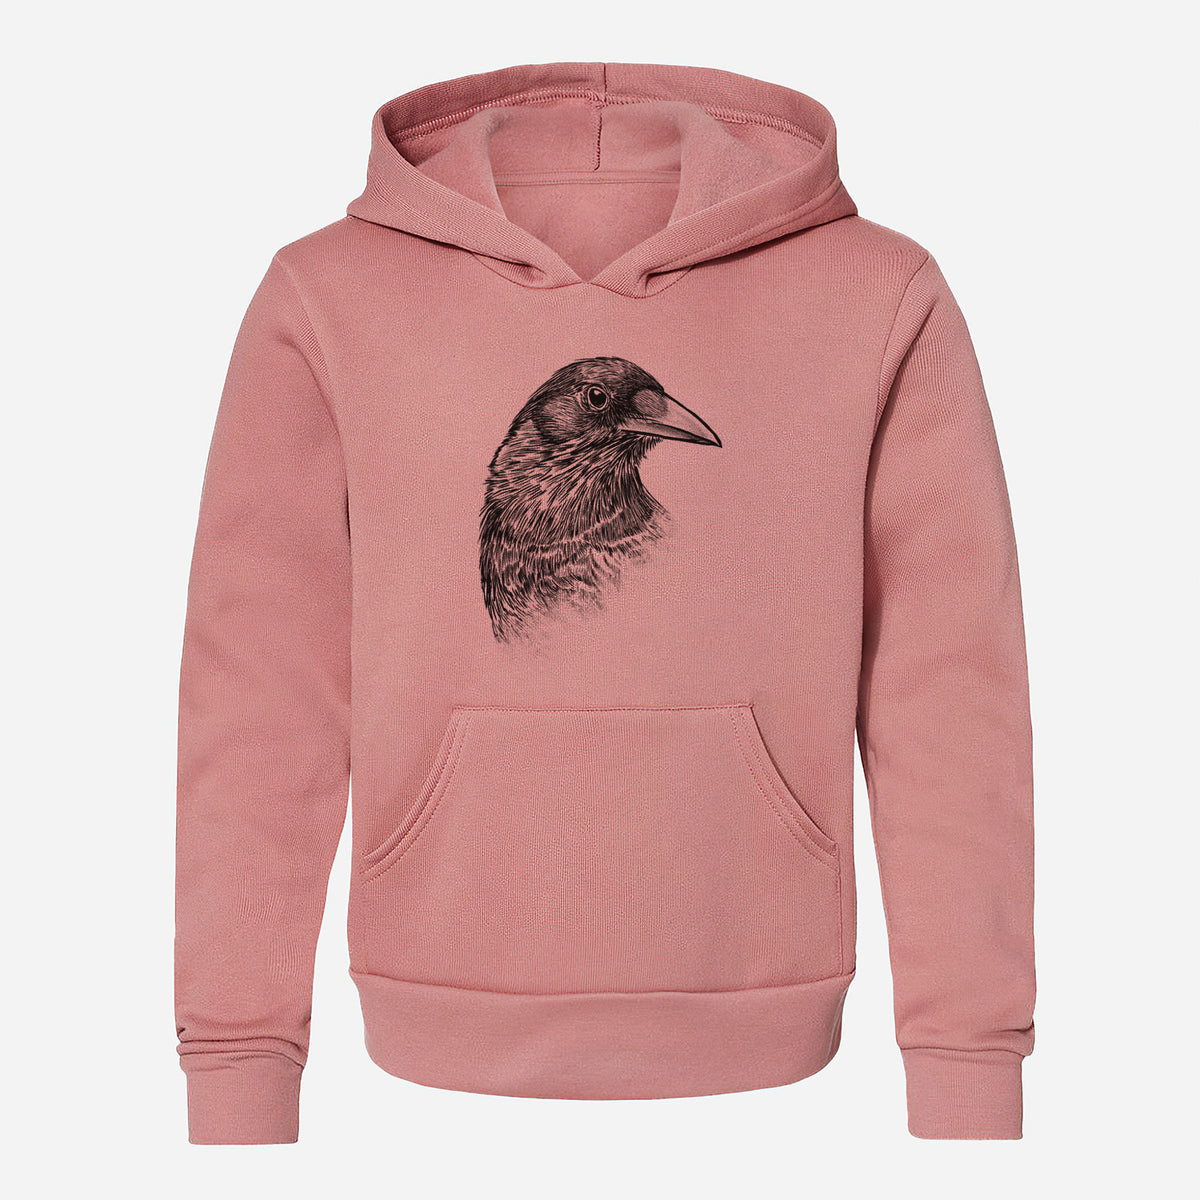 American Crow Bust - Corvus brachyrhynchos - Youth Hoodie Sweatshirt